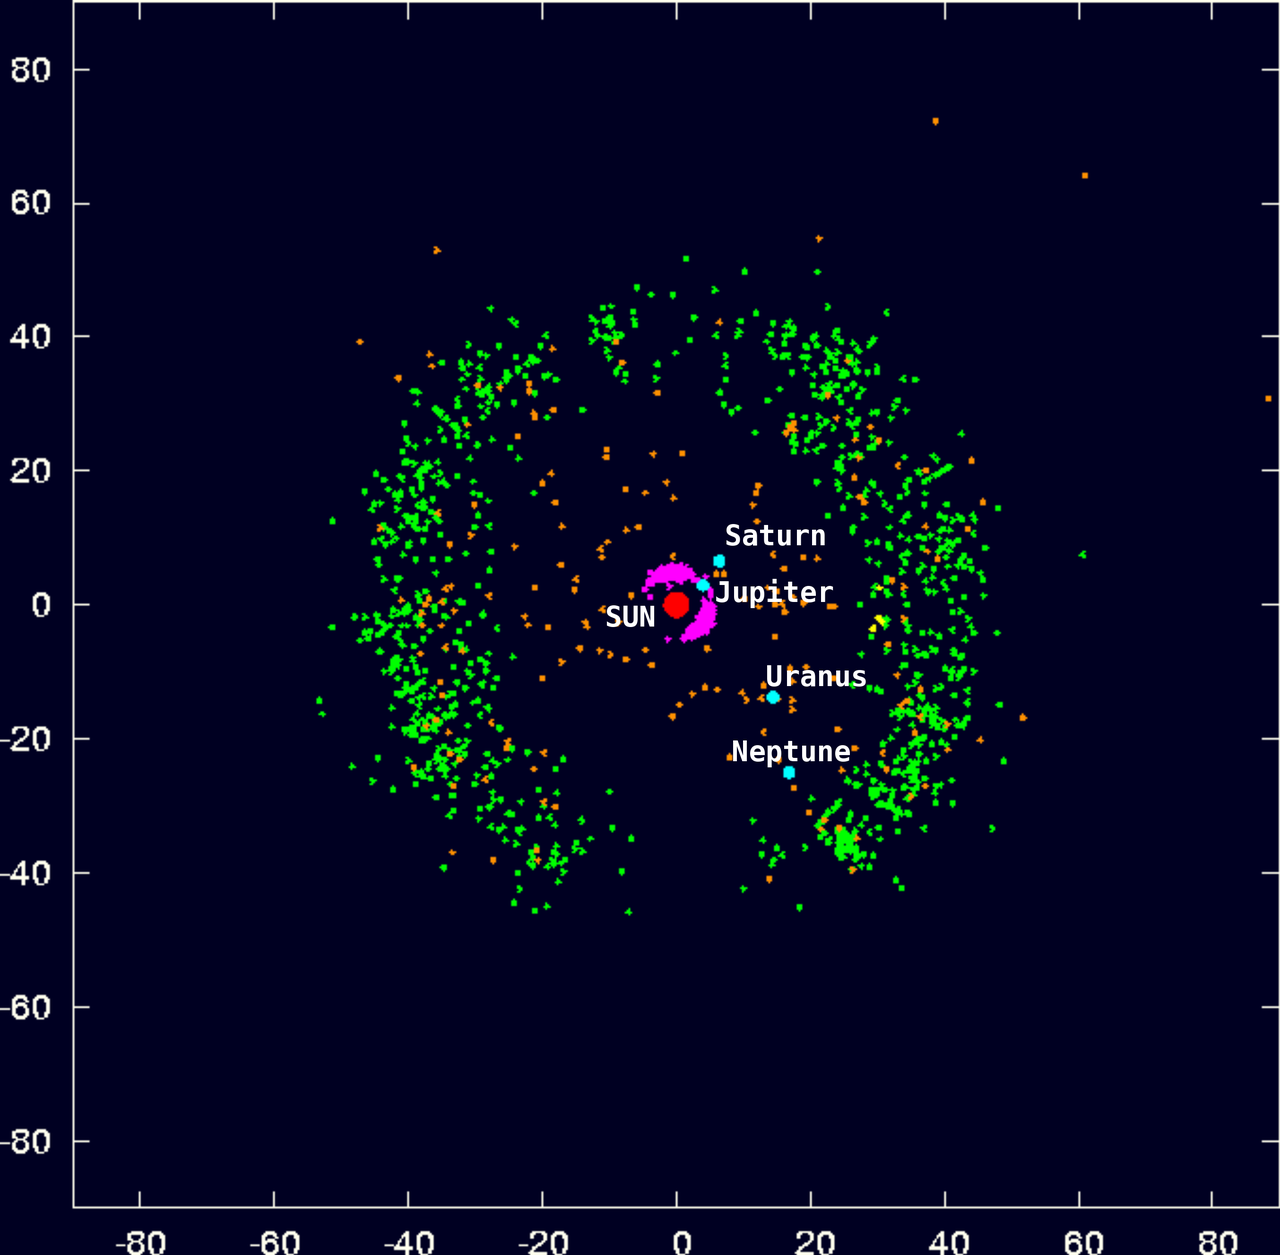 Los puntos verdes son objetos del cinturón de Kuiper